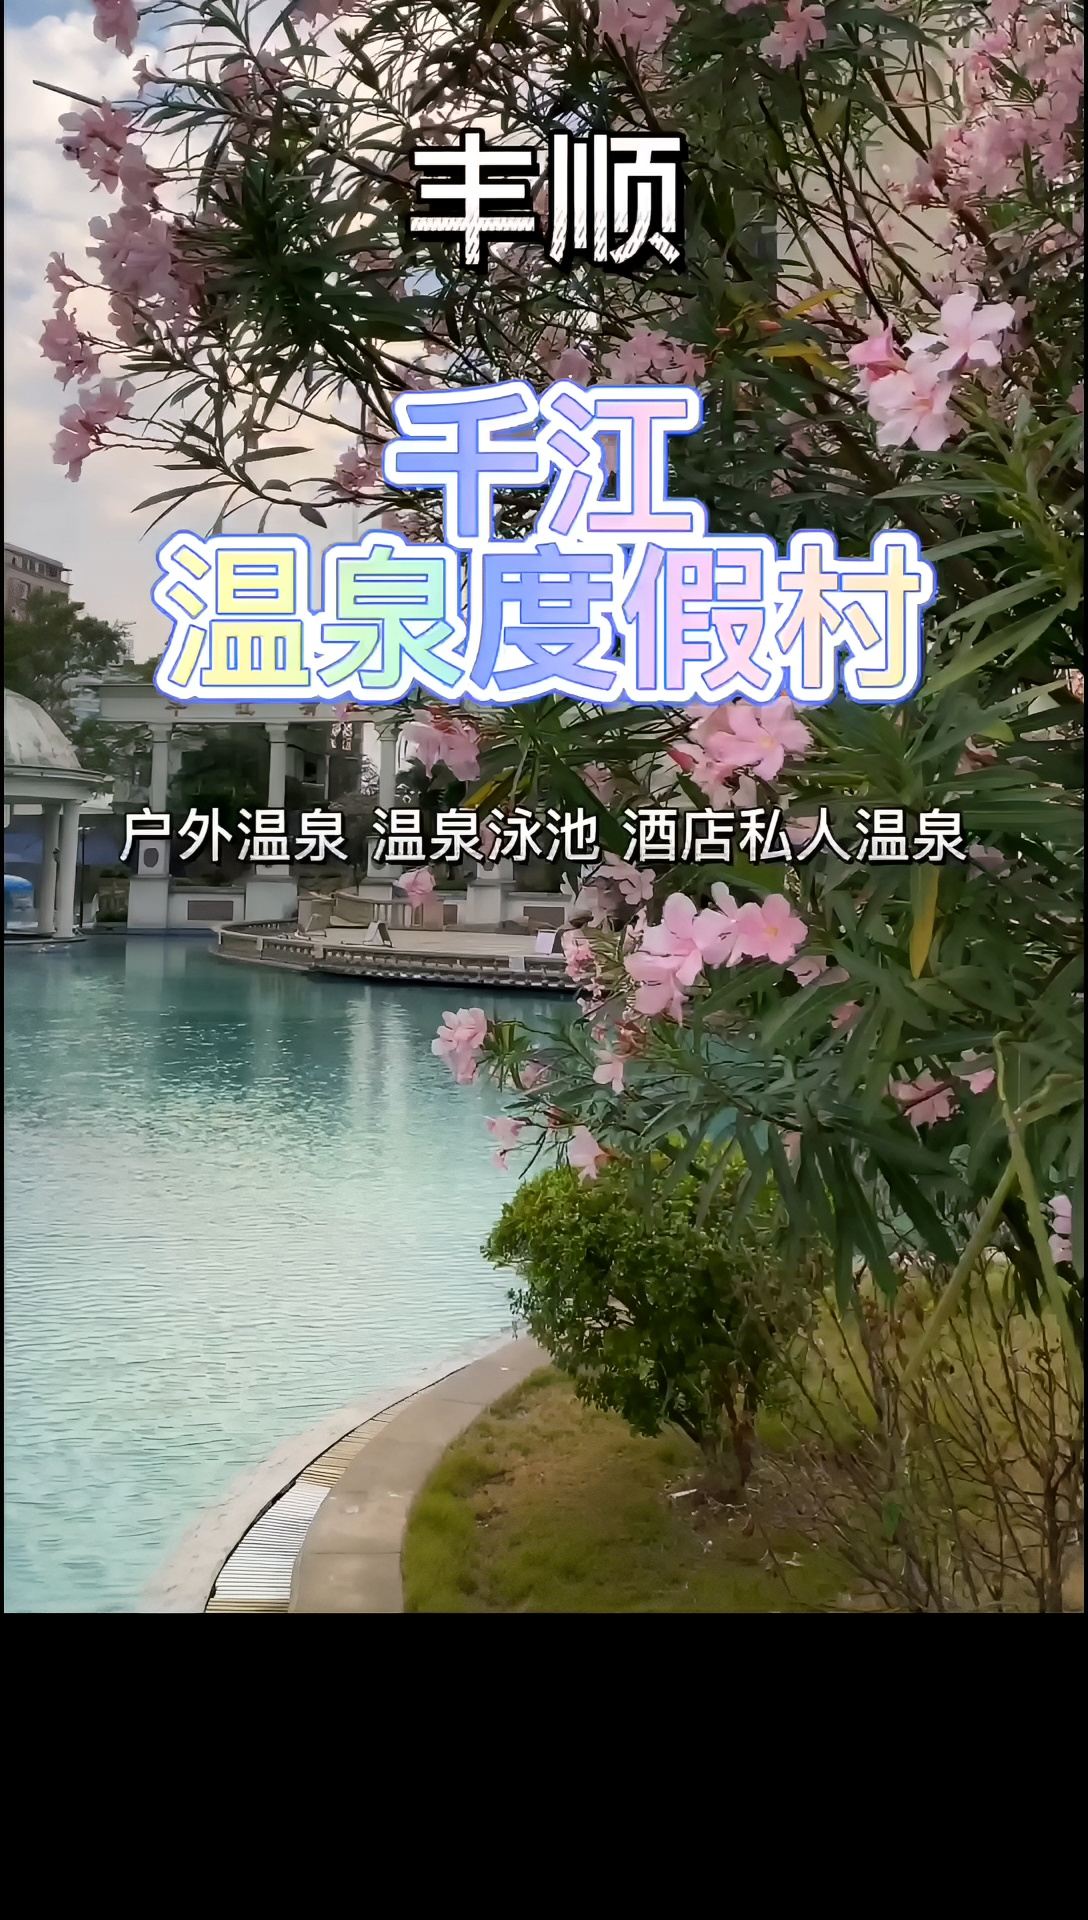 丰顺千江温泉位于广东省梅州市丰顺县，是一座集温泉、休闲、度假、康养为一体的综合性温泉度假区。这里拥有